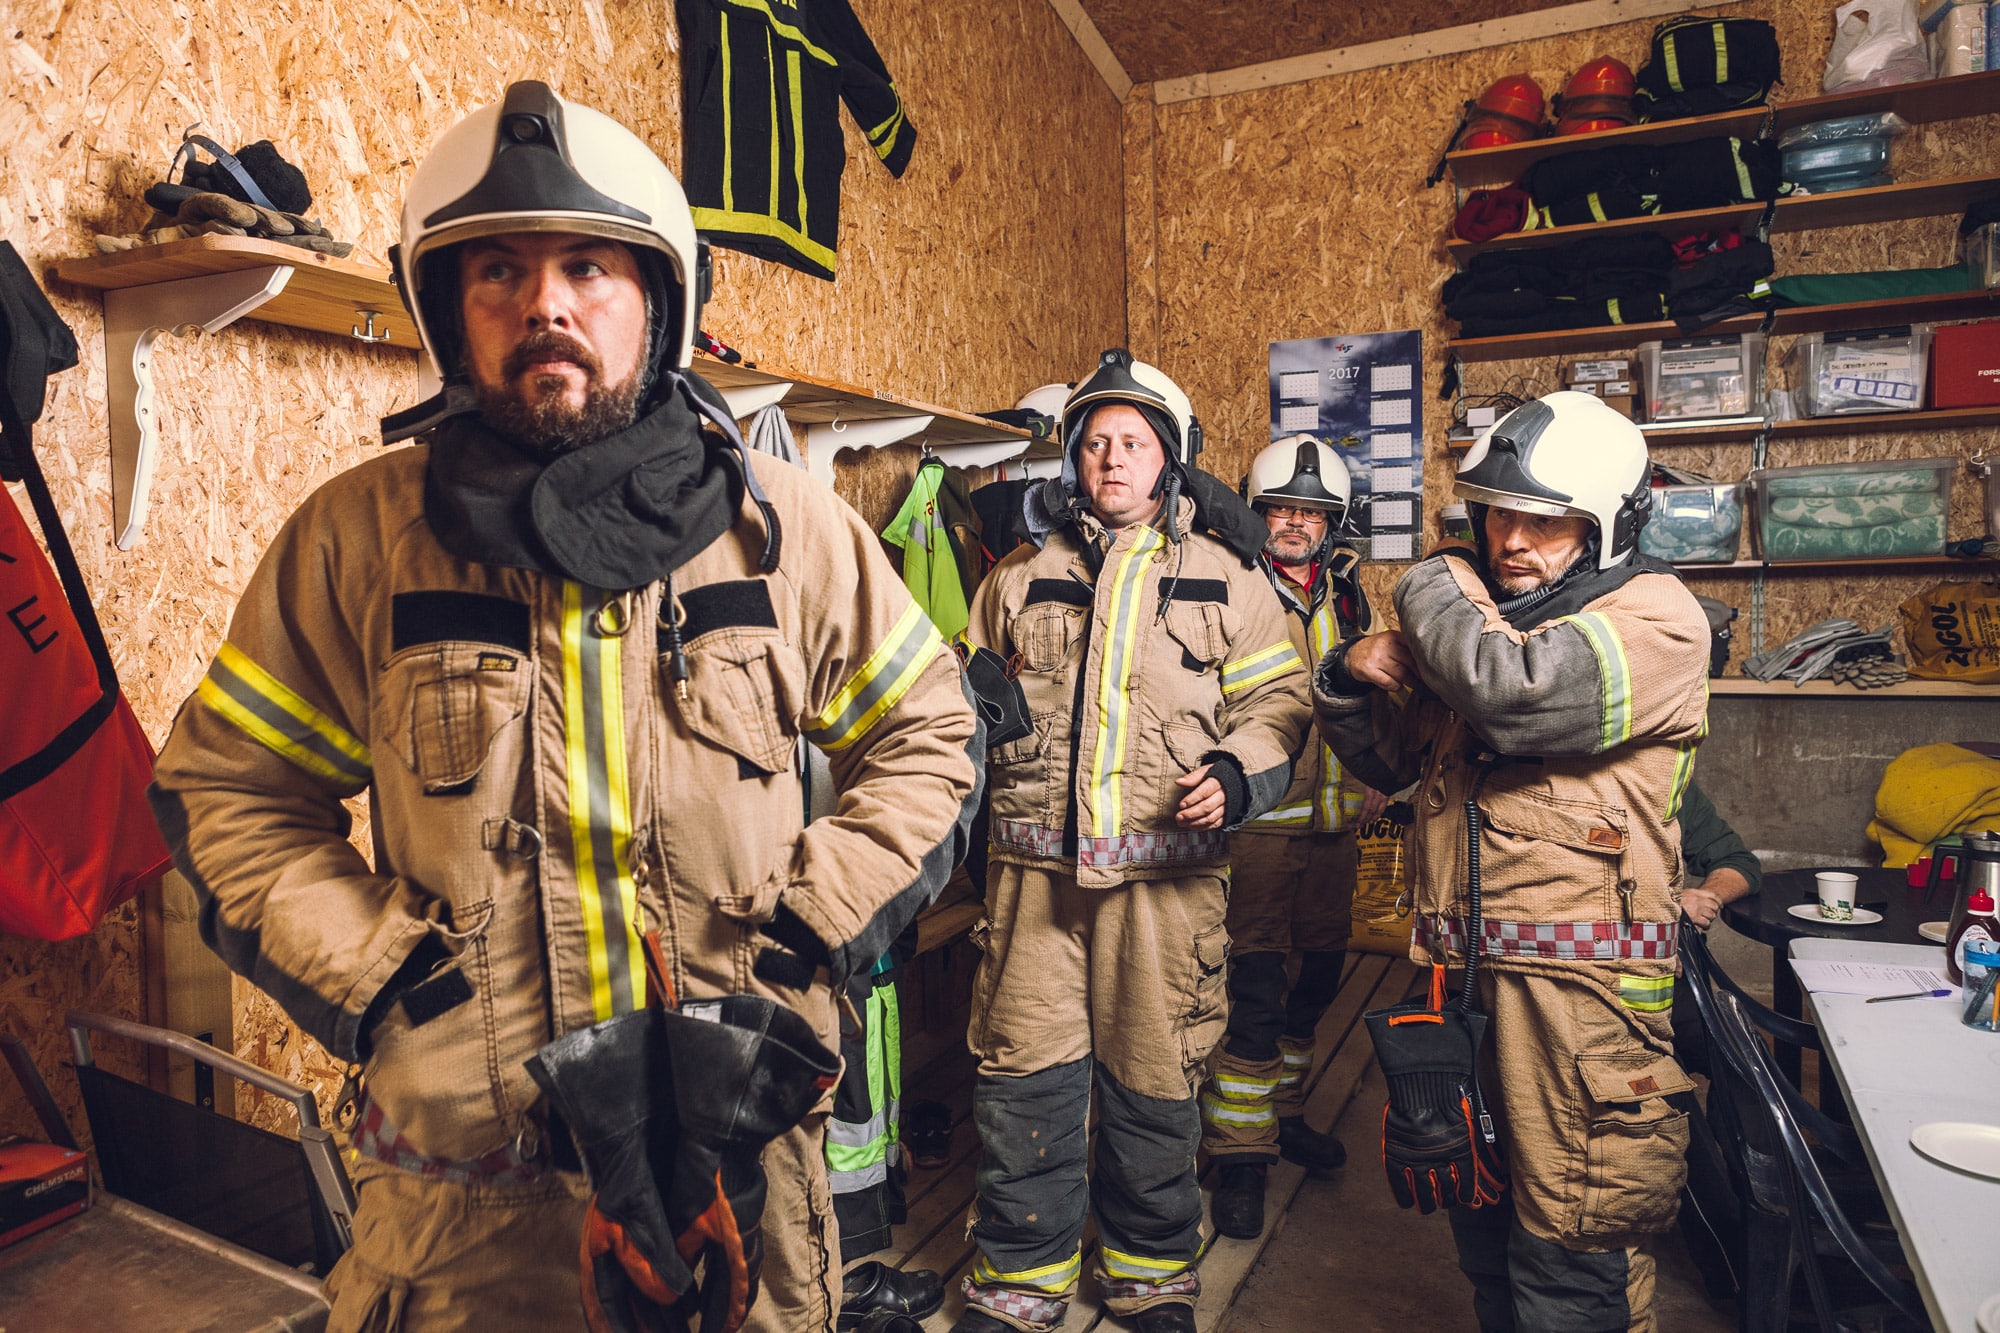 Fire brannmenn i uniform gjør seg klare til å rykke ut som akutthjelpere.